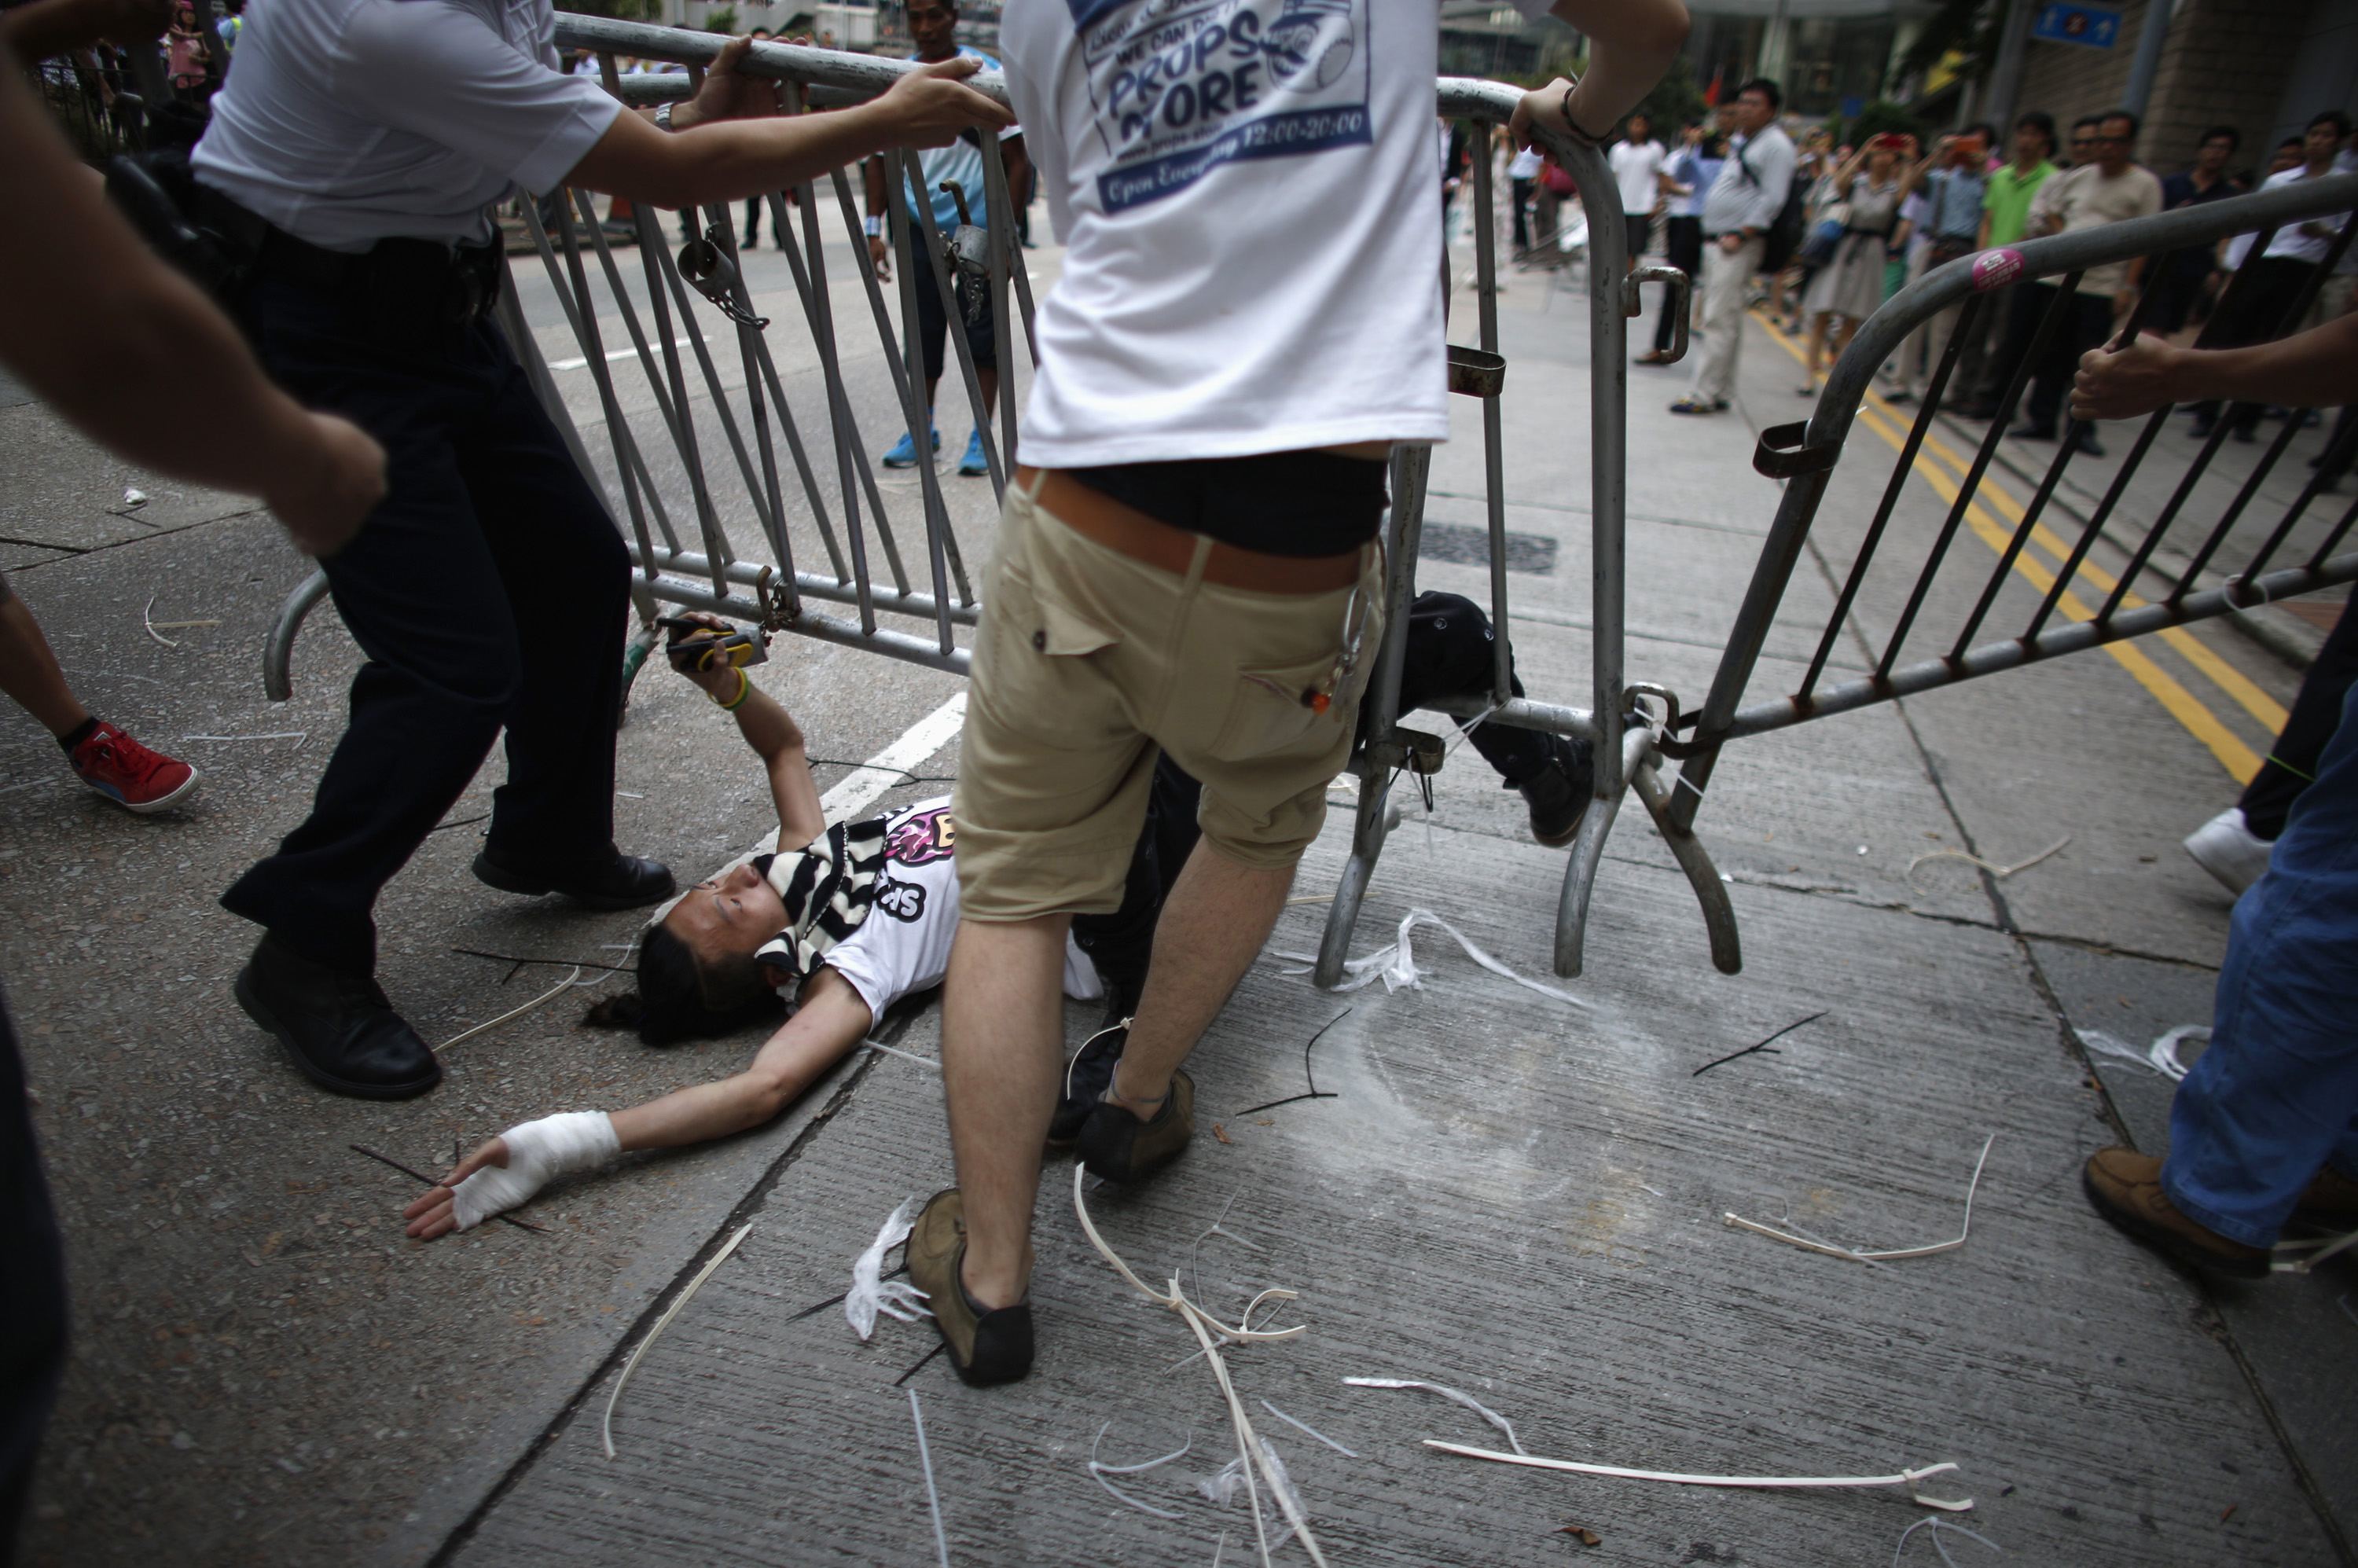 “Αγανακτισμένοι” πολίτες έναντίον διαδηλωτών στο Χόνγκ Κόνγκ